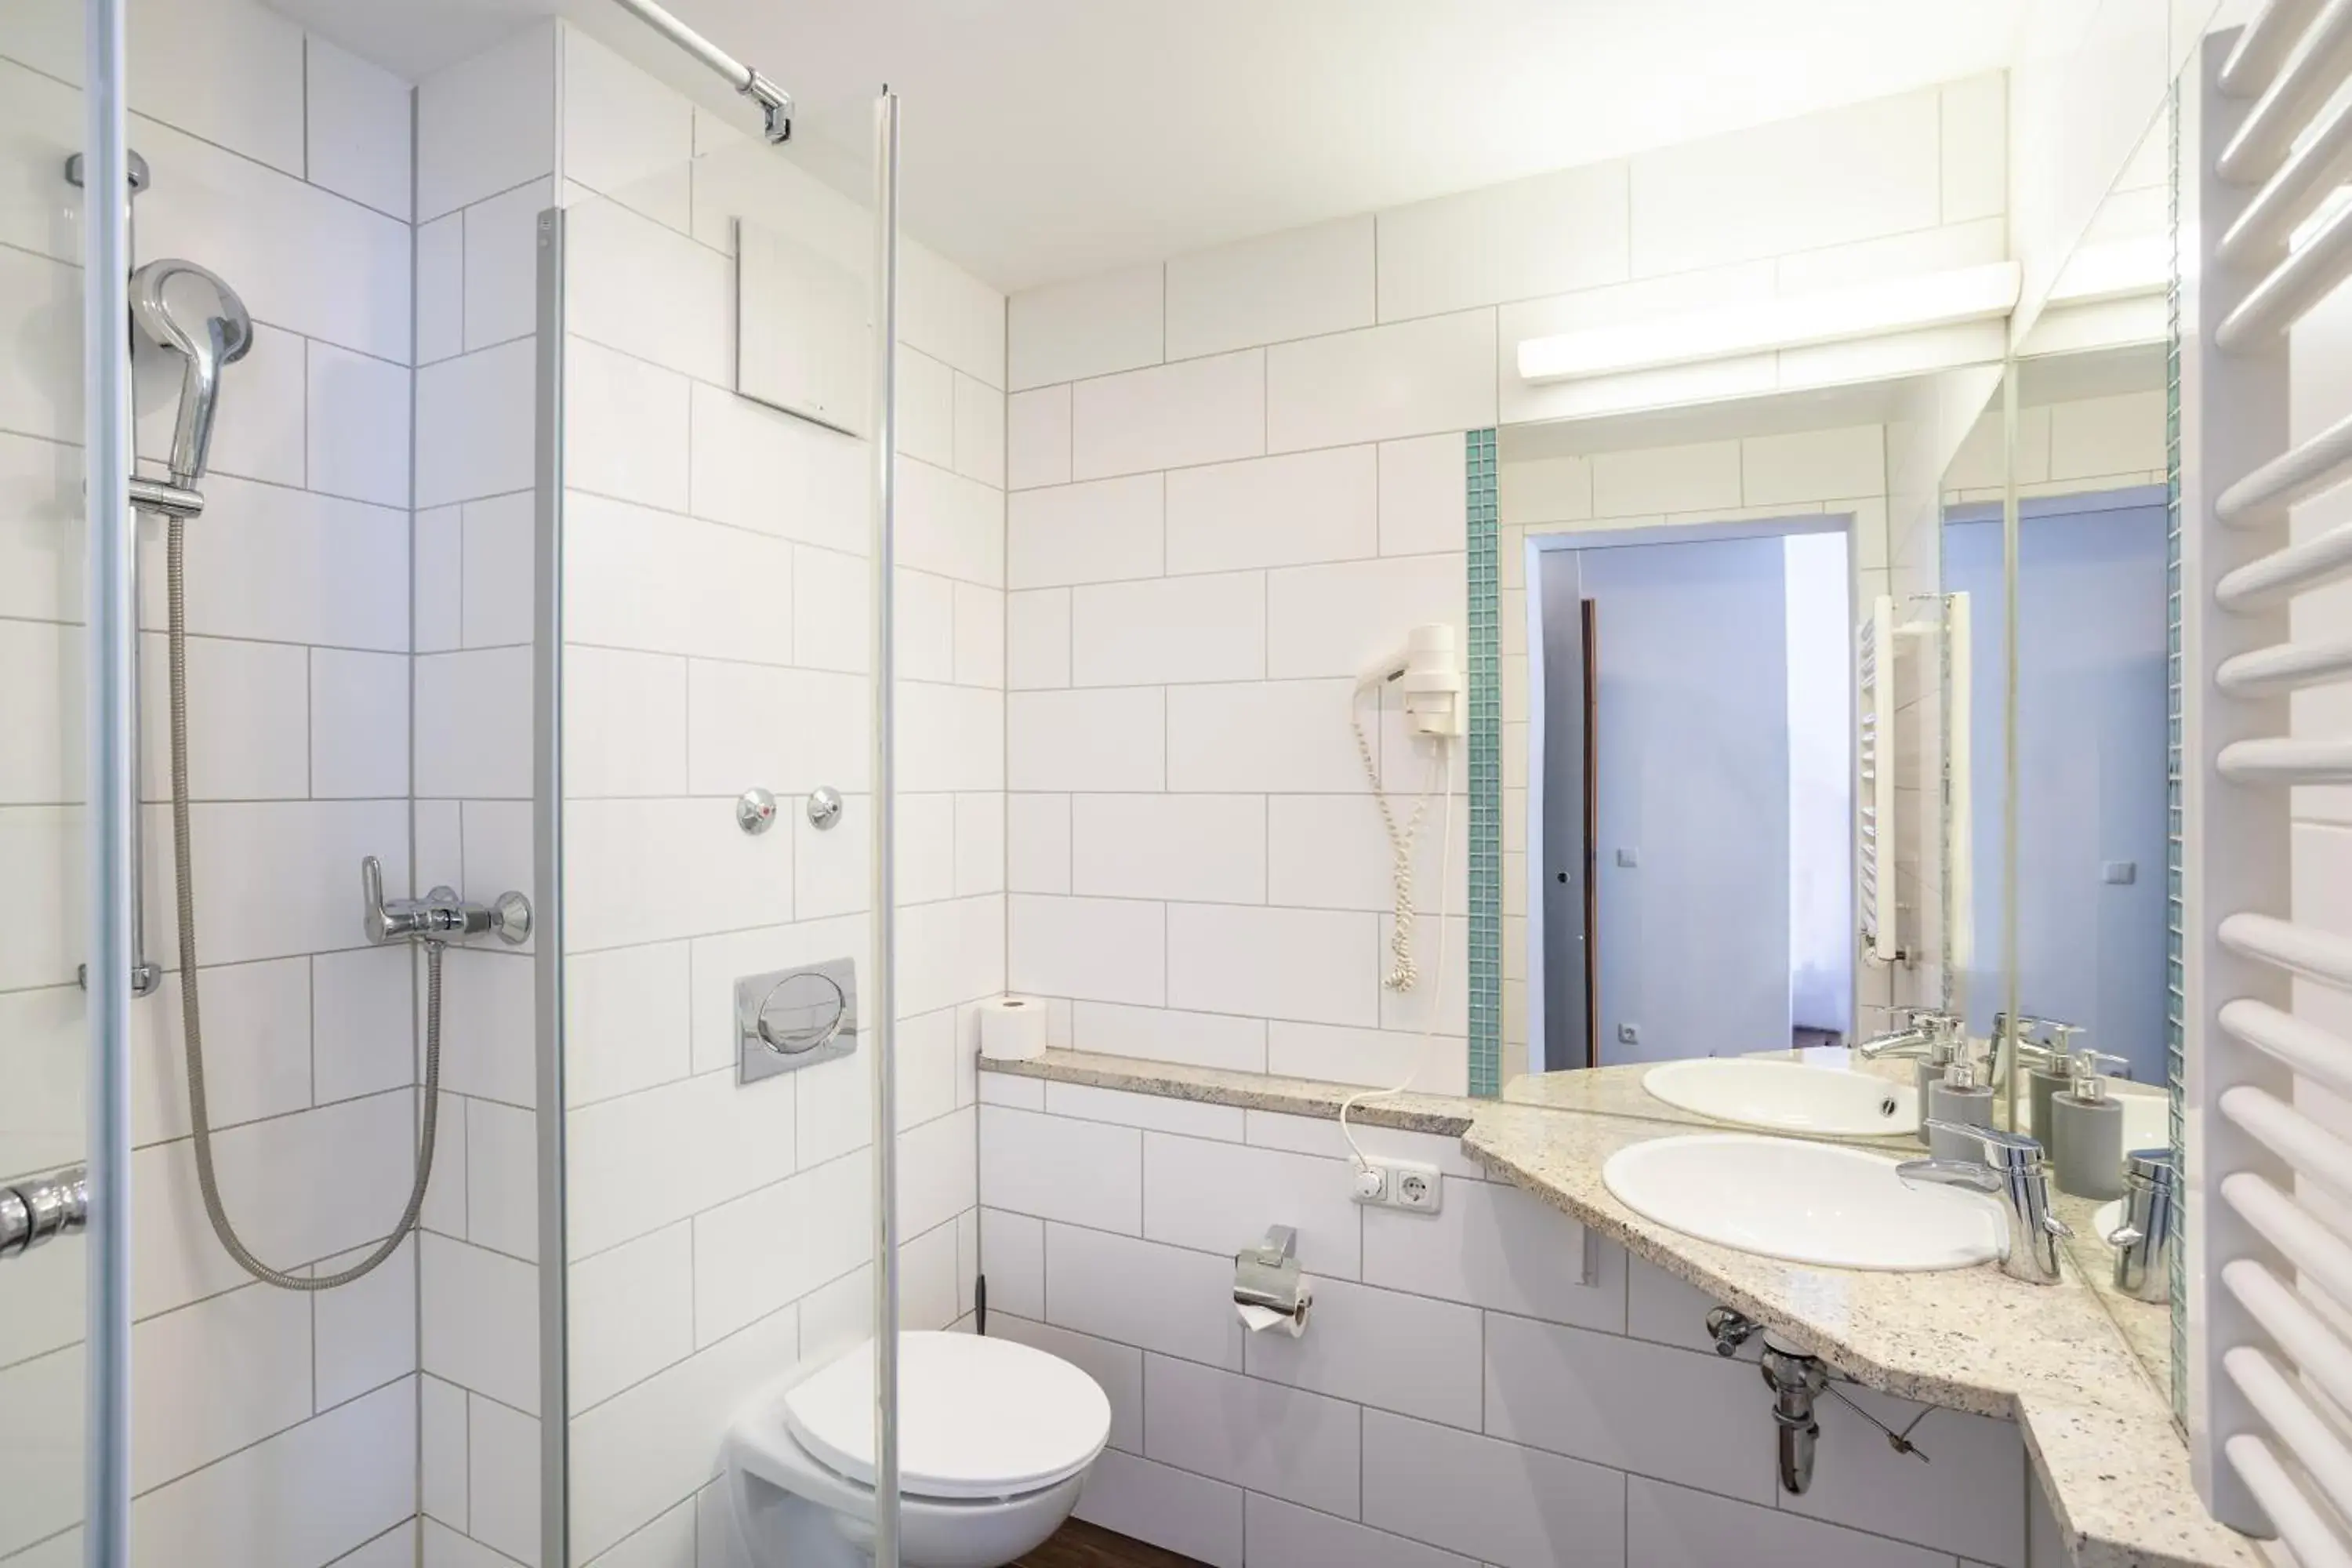 Shower, Bathroom in Jaeger´s Munich (Hotel/Hostel)